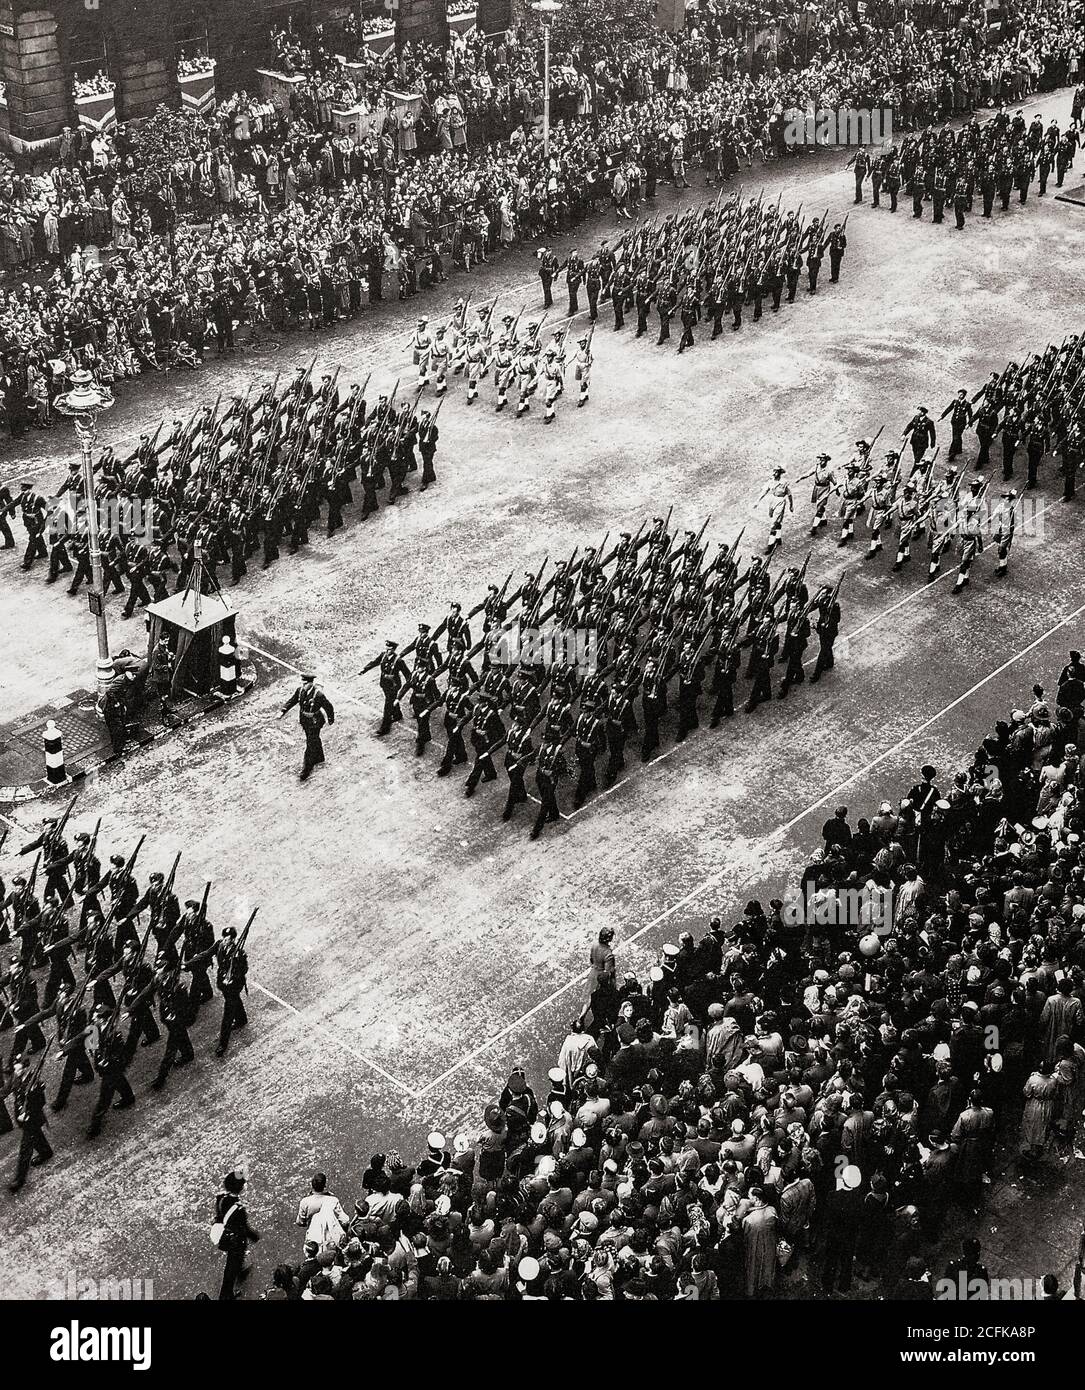 Il reggimento RAF che marciava lungo Parliament Street, Londra durante la Victory Parade del 1946 era lungo più di quattro miglia e conteneva più di 500 veicoli dalla Royal Navy, dalla Royal Air Force, dai servizi civili britannici e dall'esercito britannico. Foto Stock